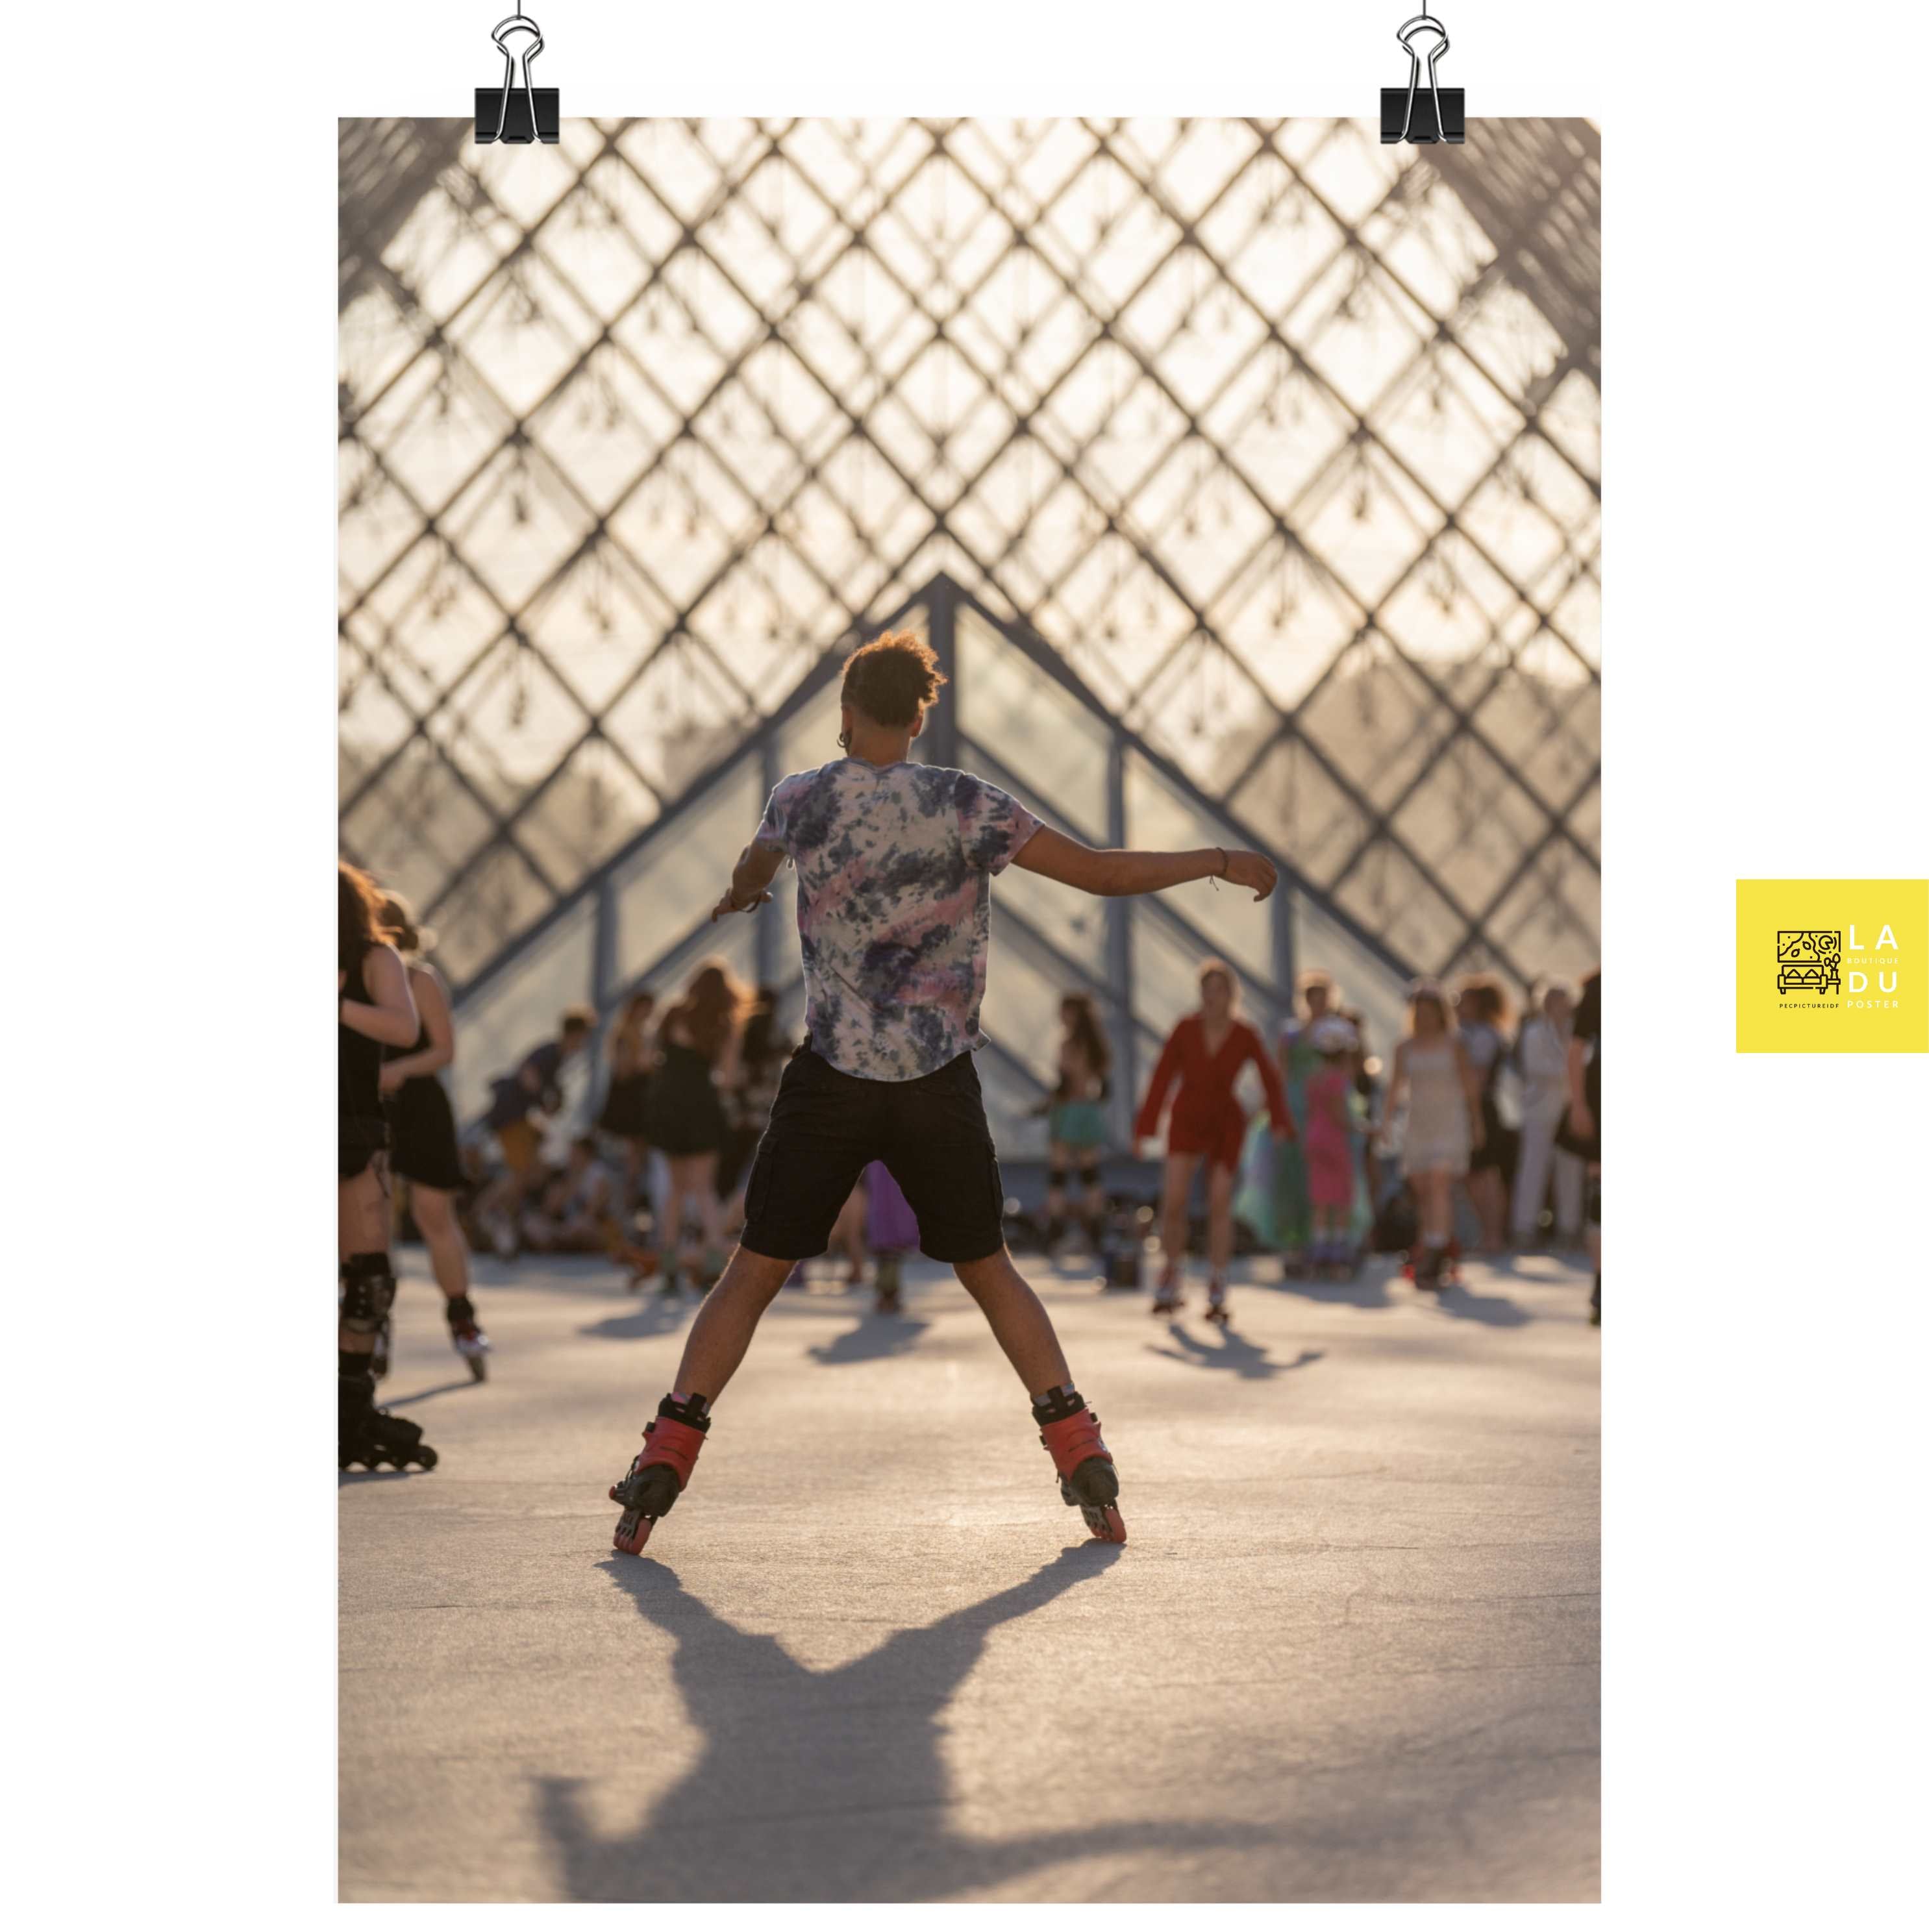 Un acrobate sur des rollers - Poster - La boutique du poster Français